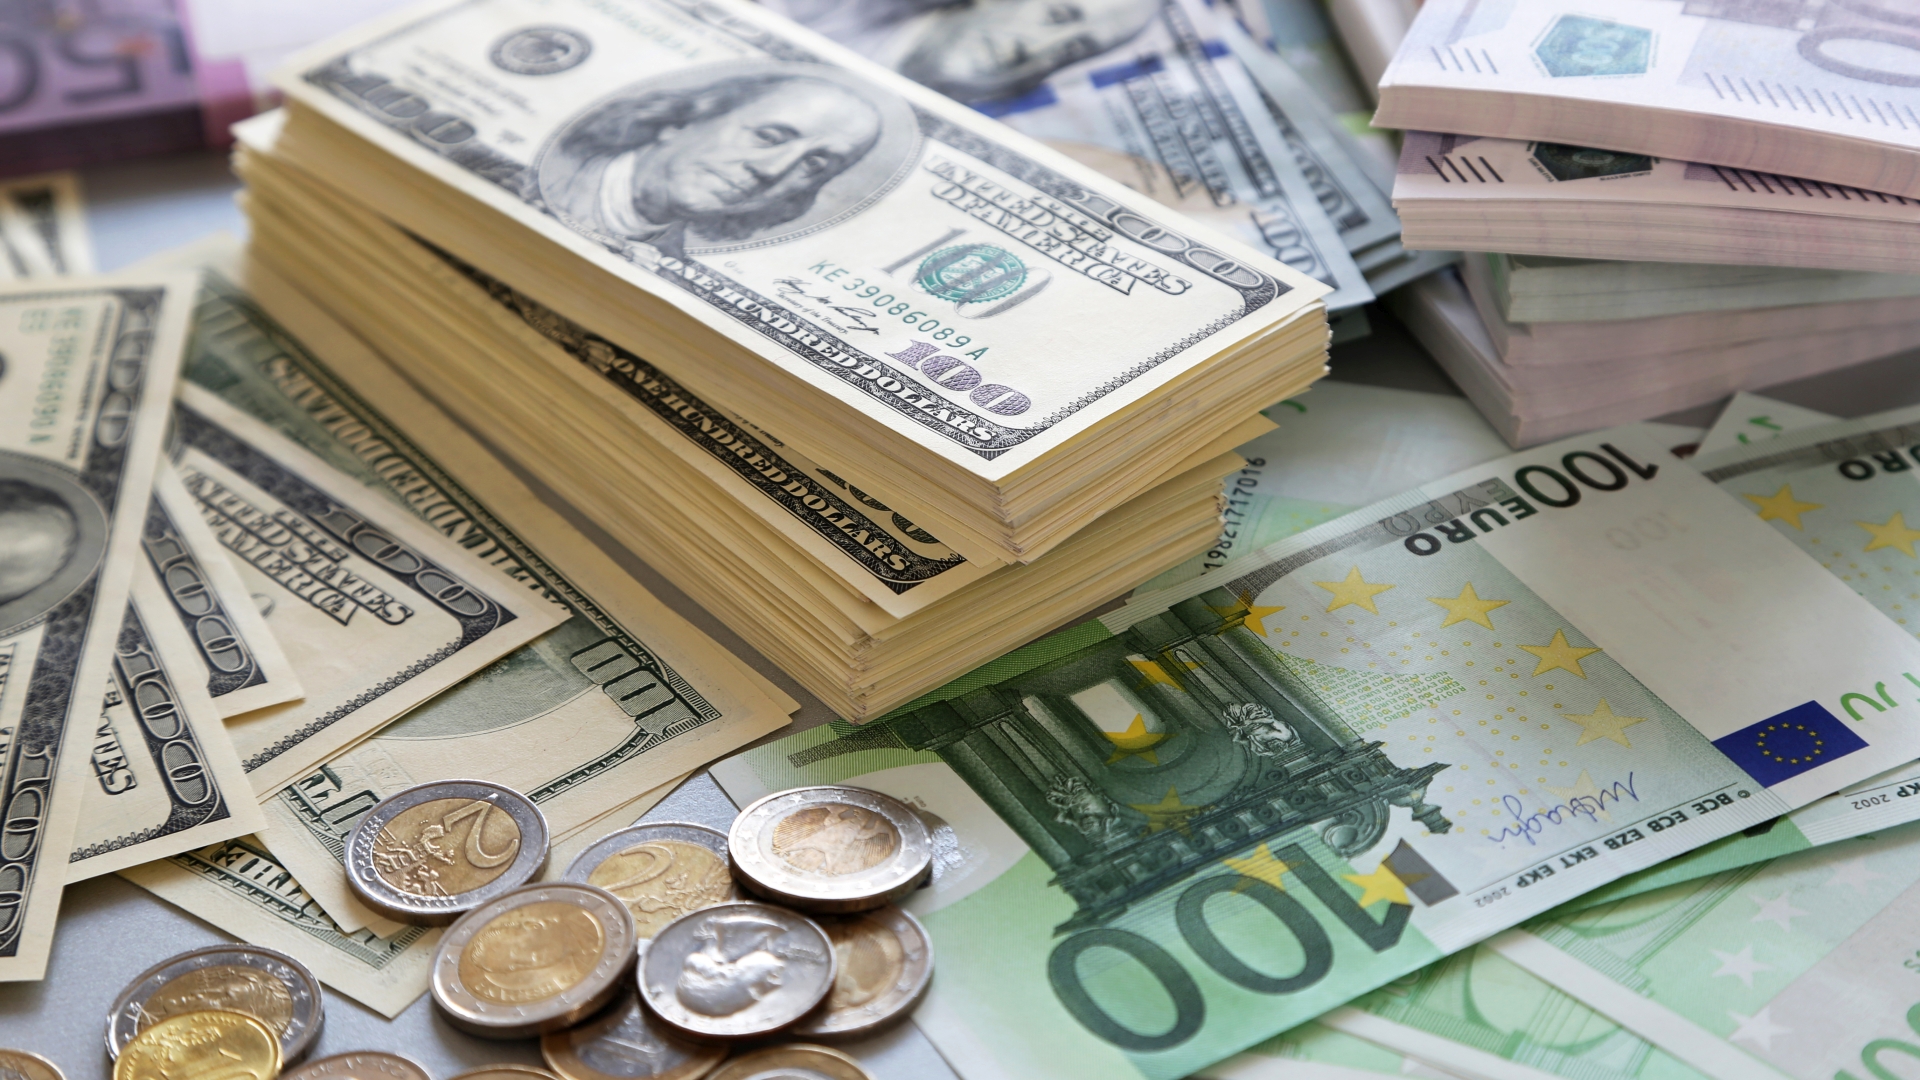 Dolar ve euro haftaya nasıl başladı?